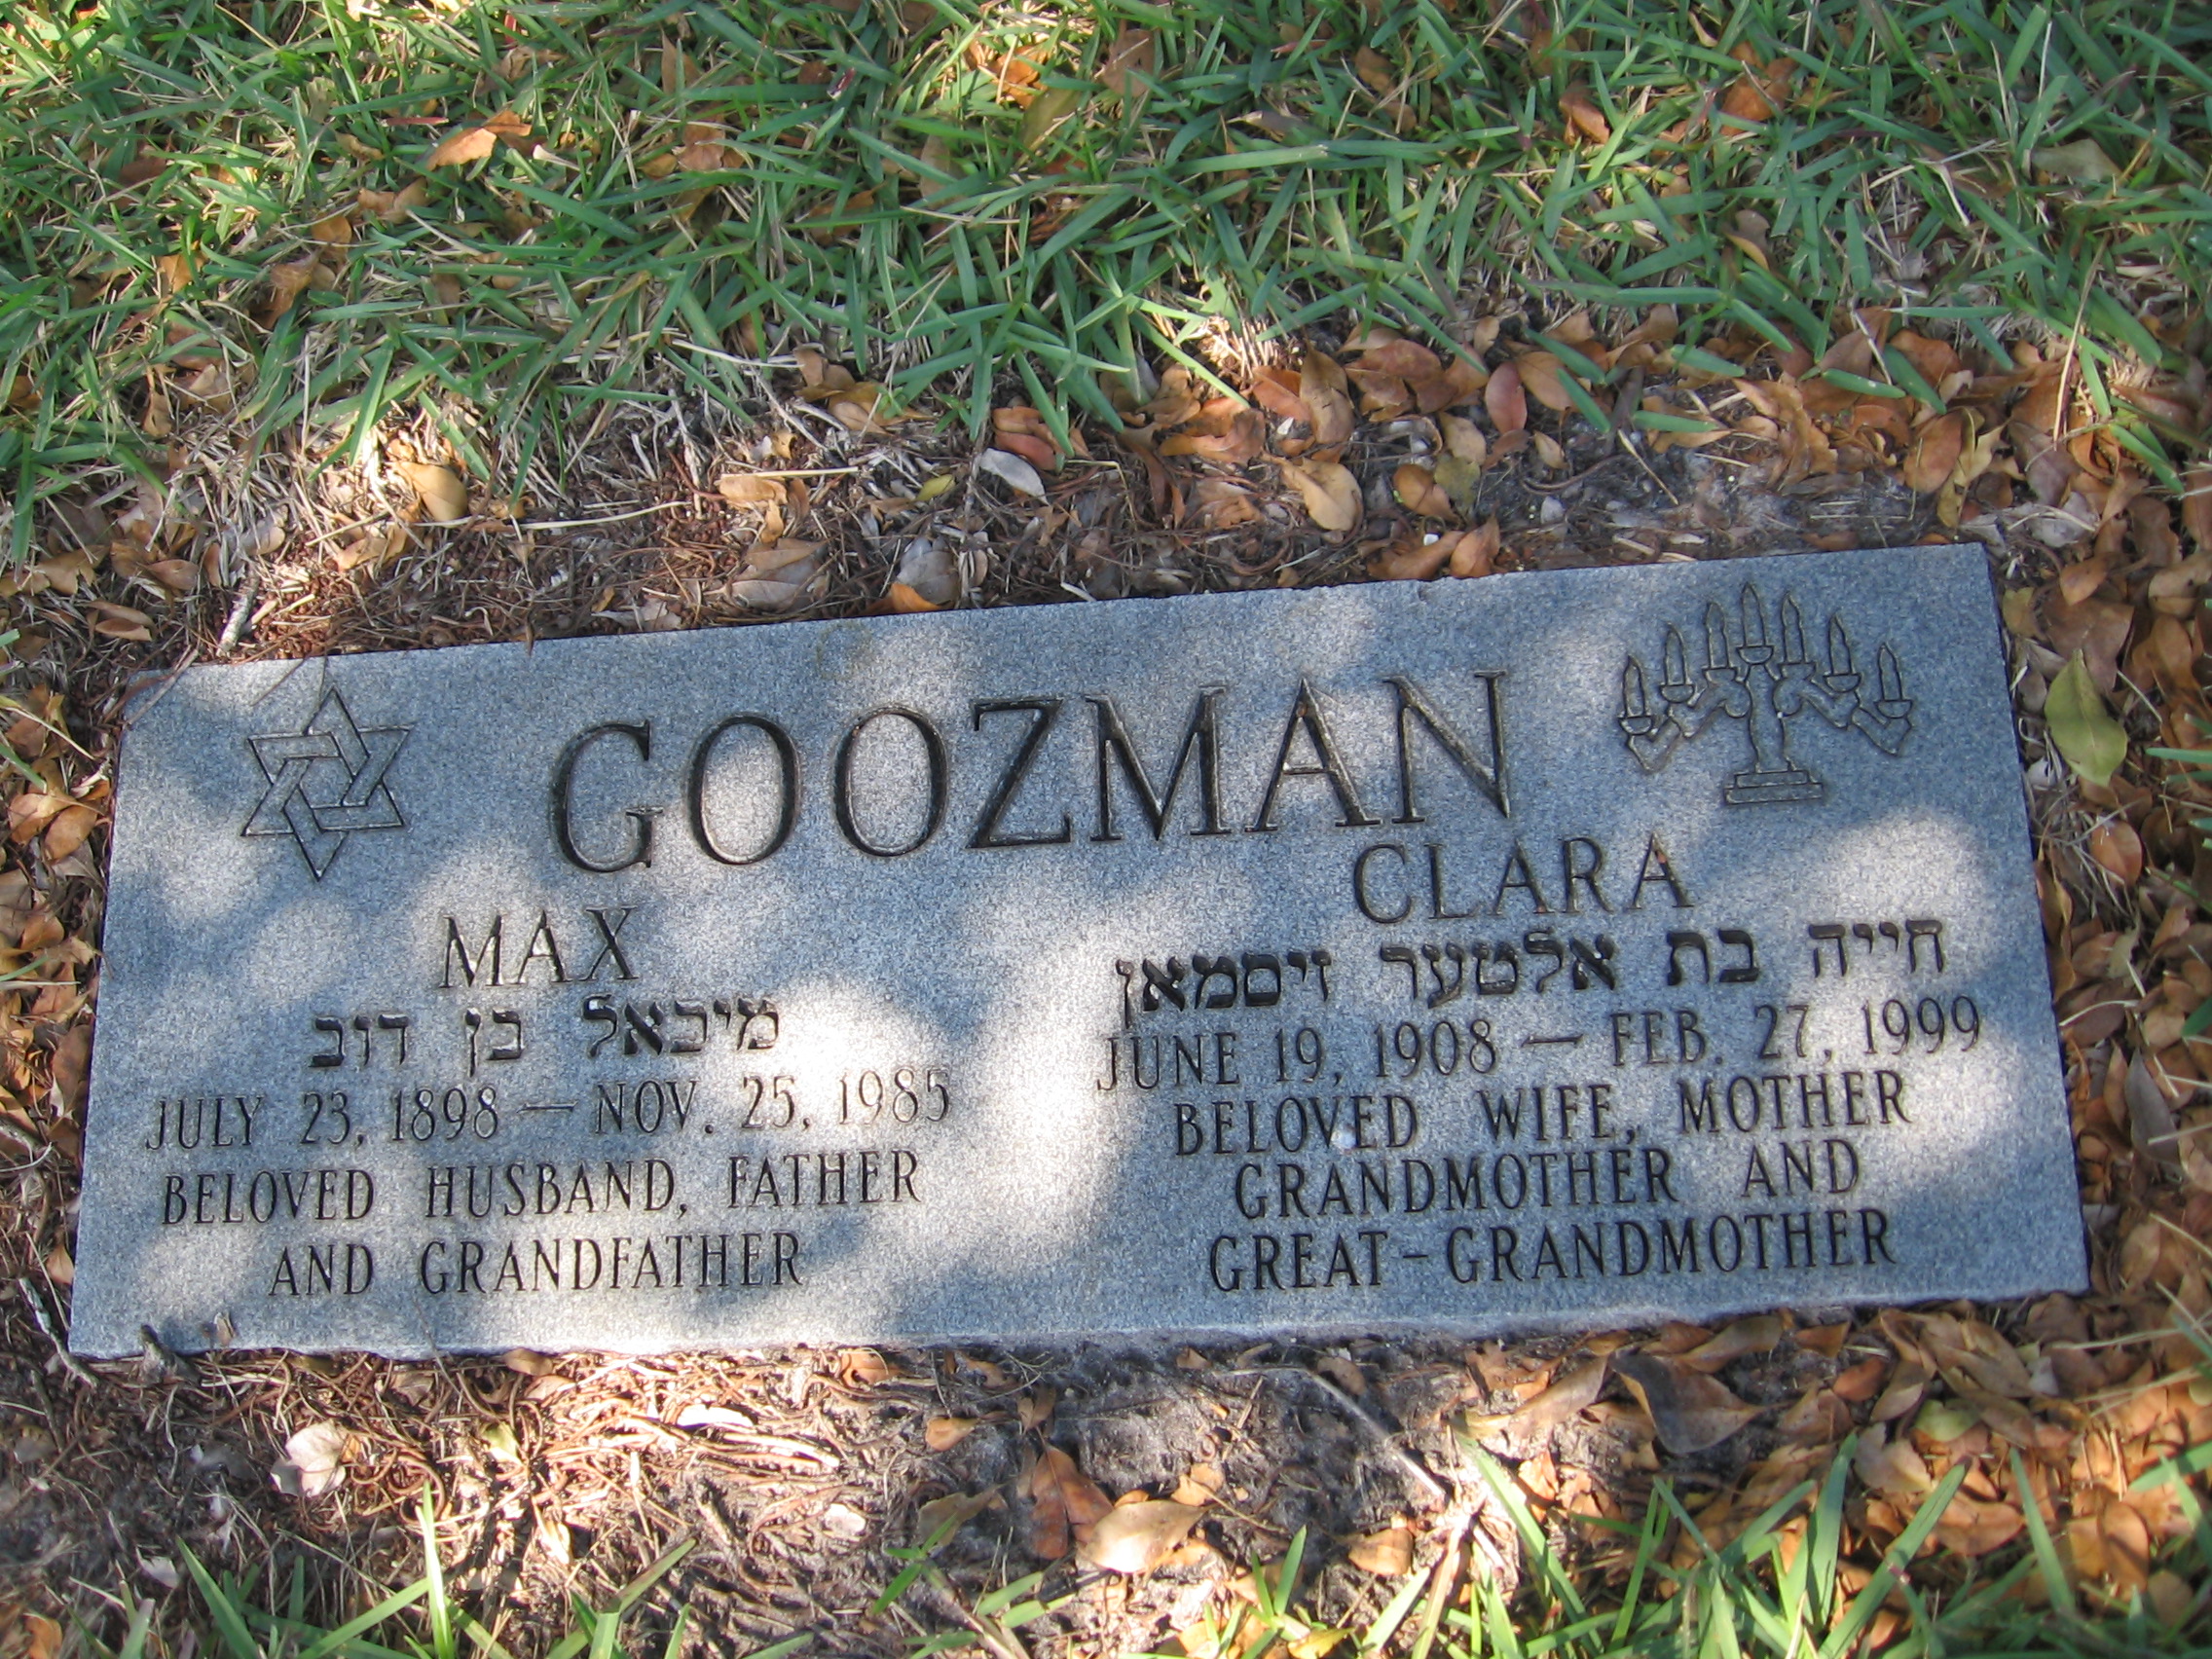 Max Goozman